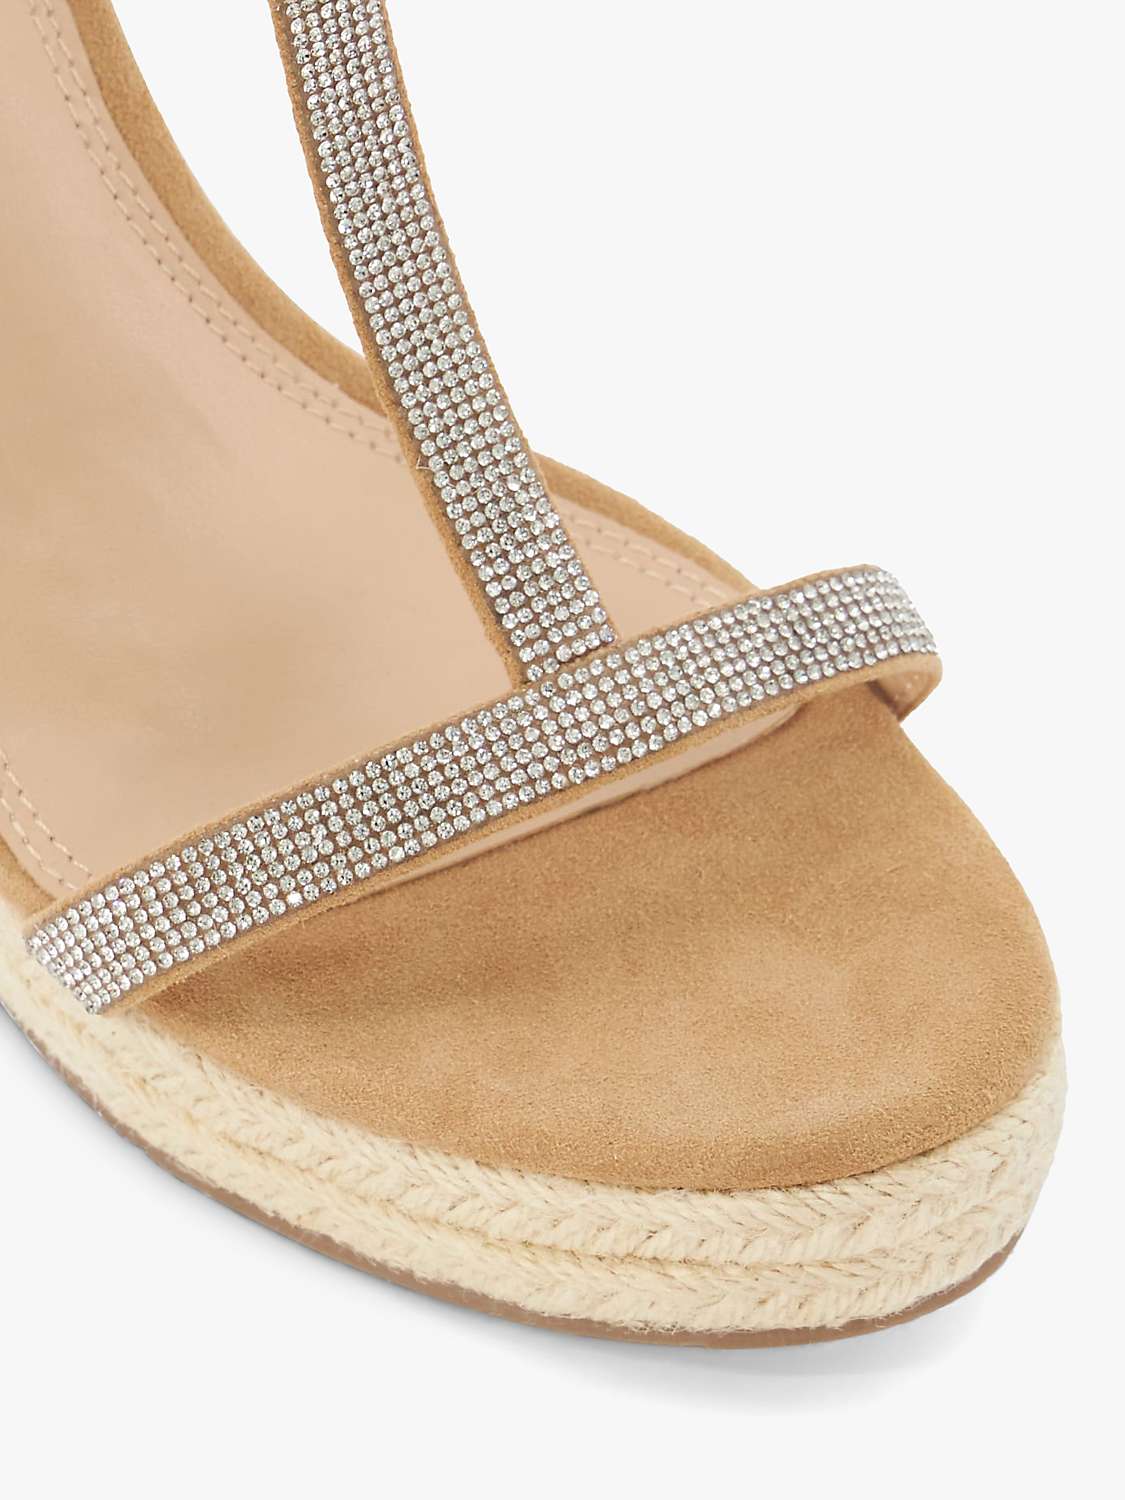 Buy Dune Kitten Suede Embellished T-Bar Wedge Sandals, Camel Online at johnlewis.com